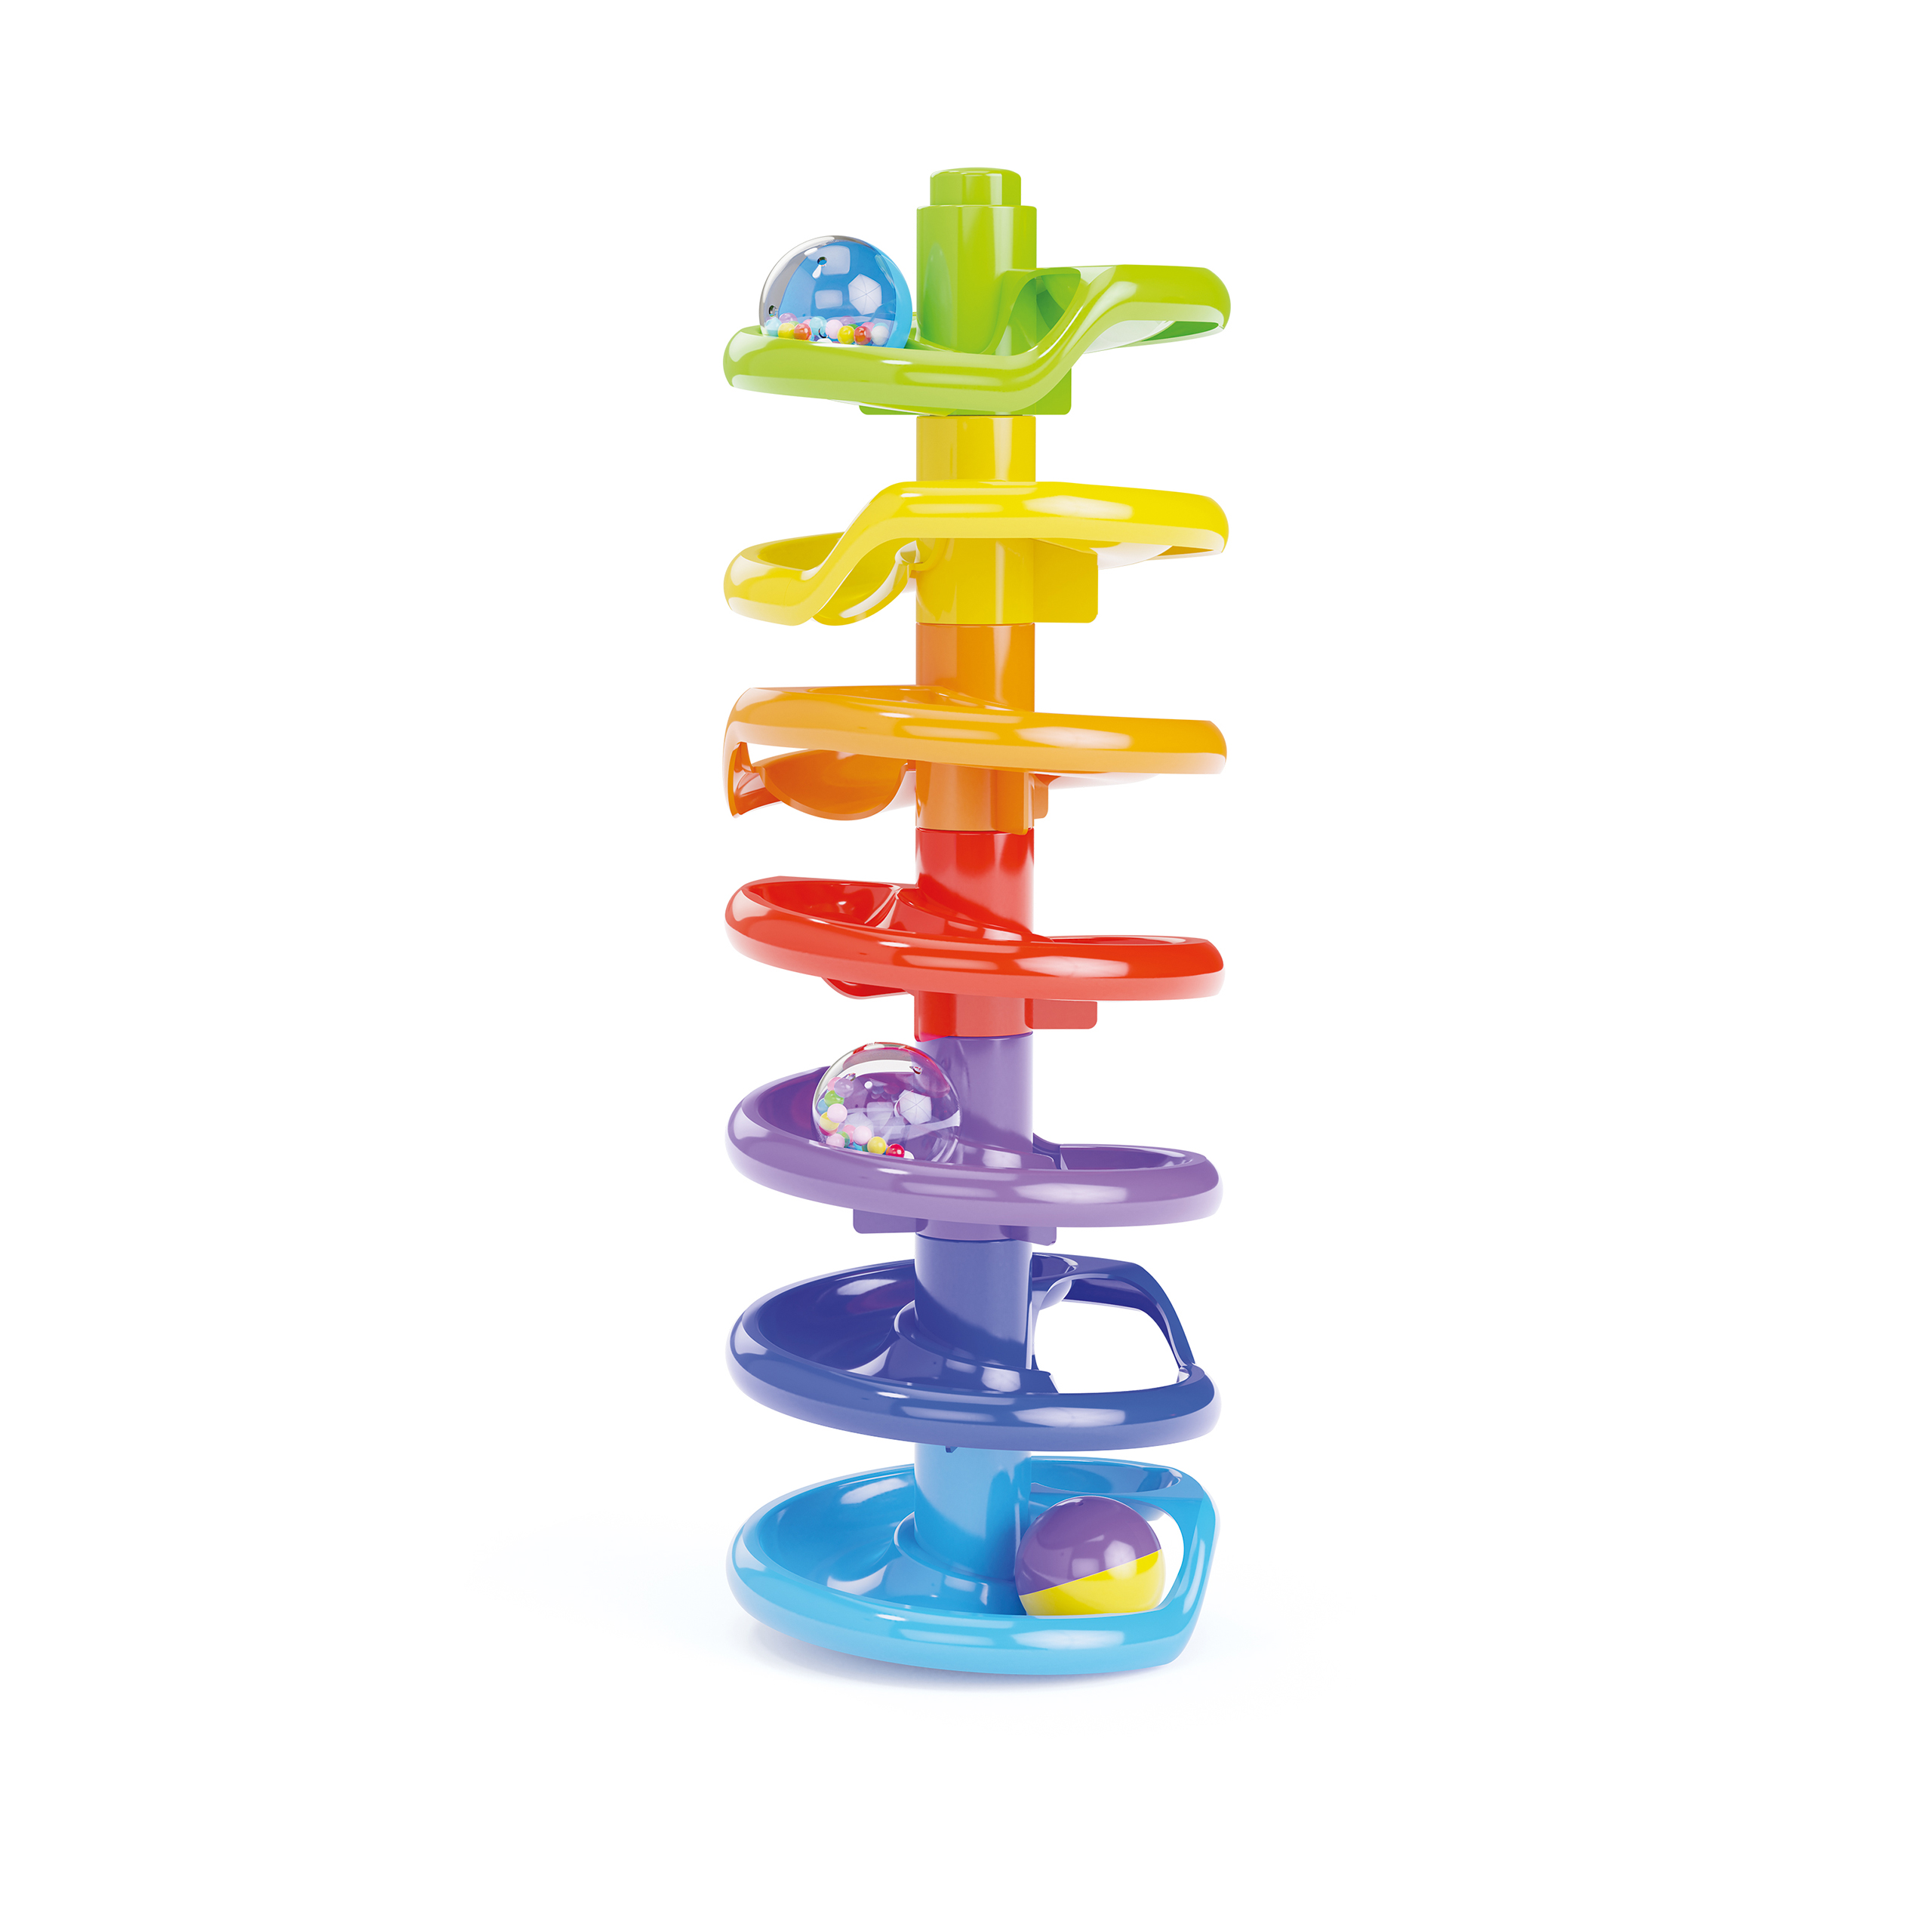 Konstruktionsspielzeug quercetti spiral tower